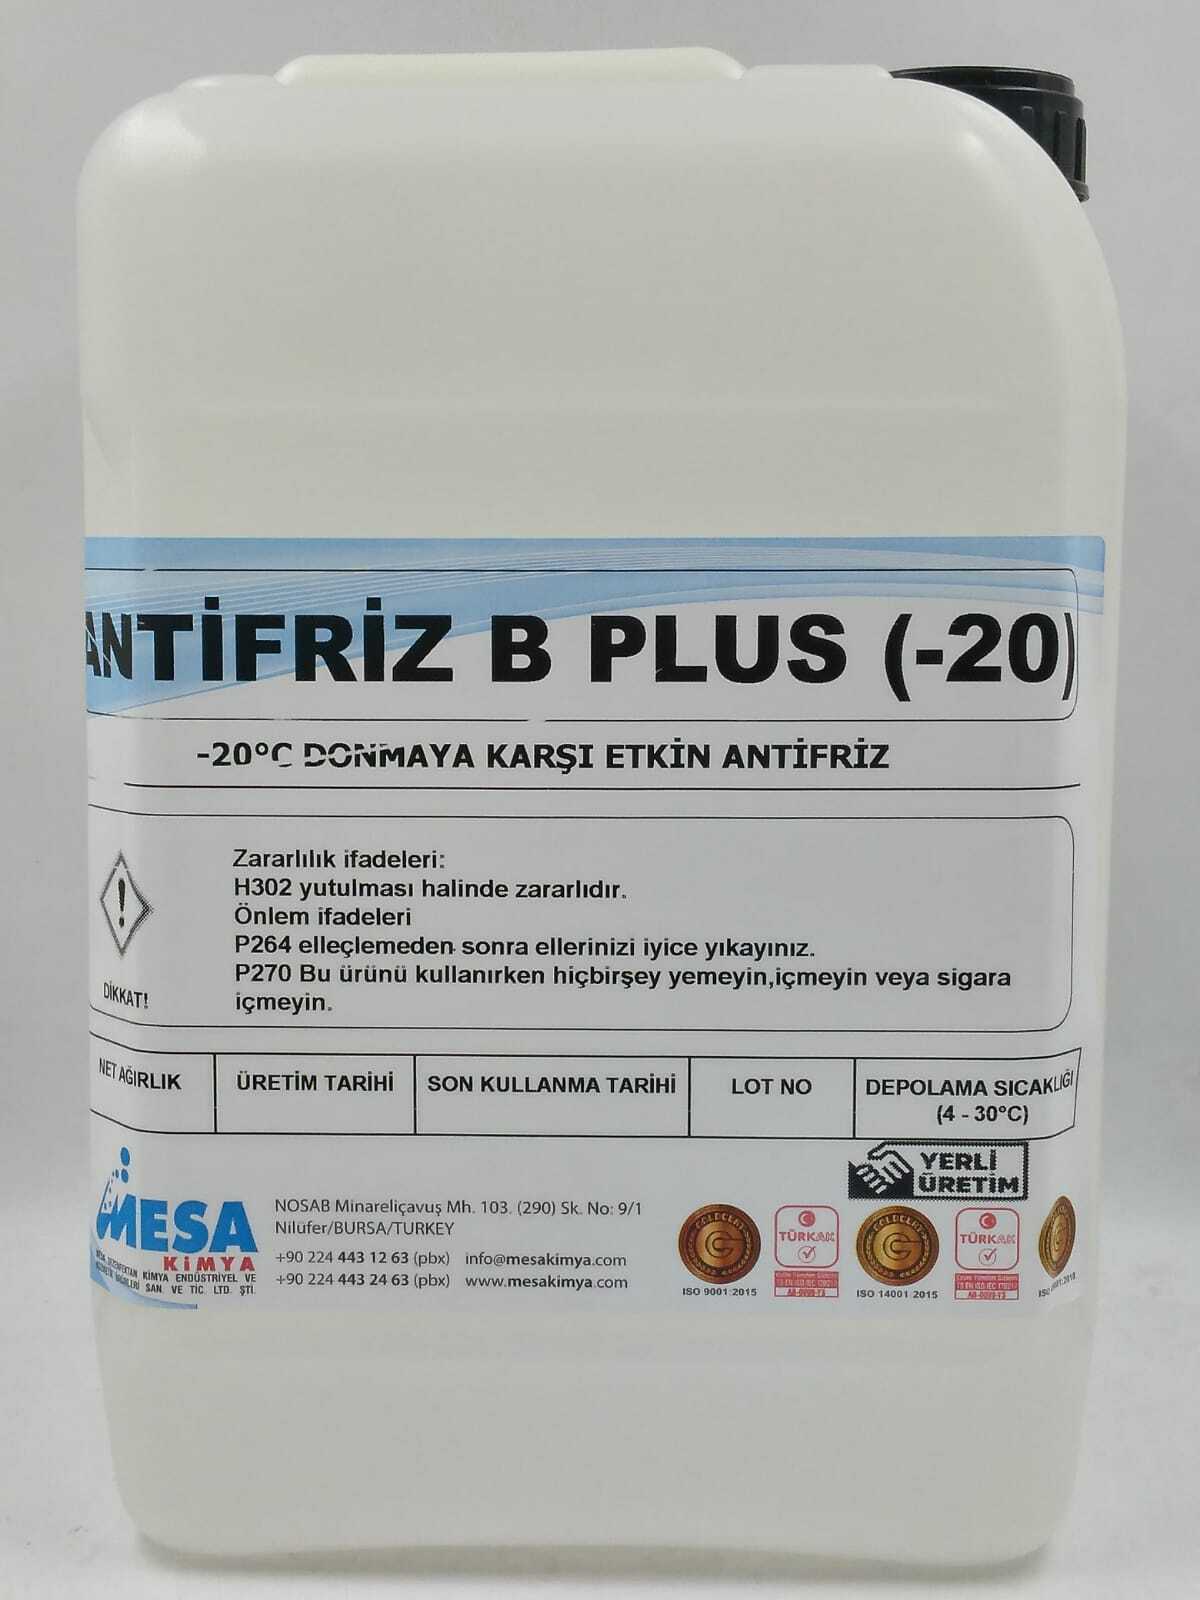 Antifiriz B Plus - 20 